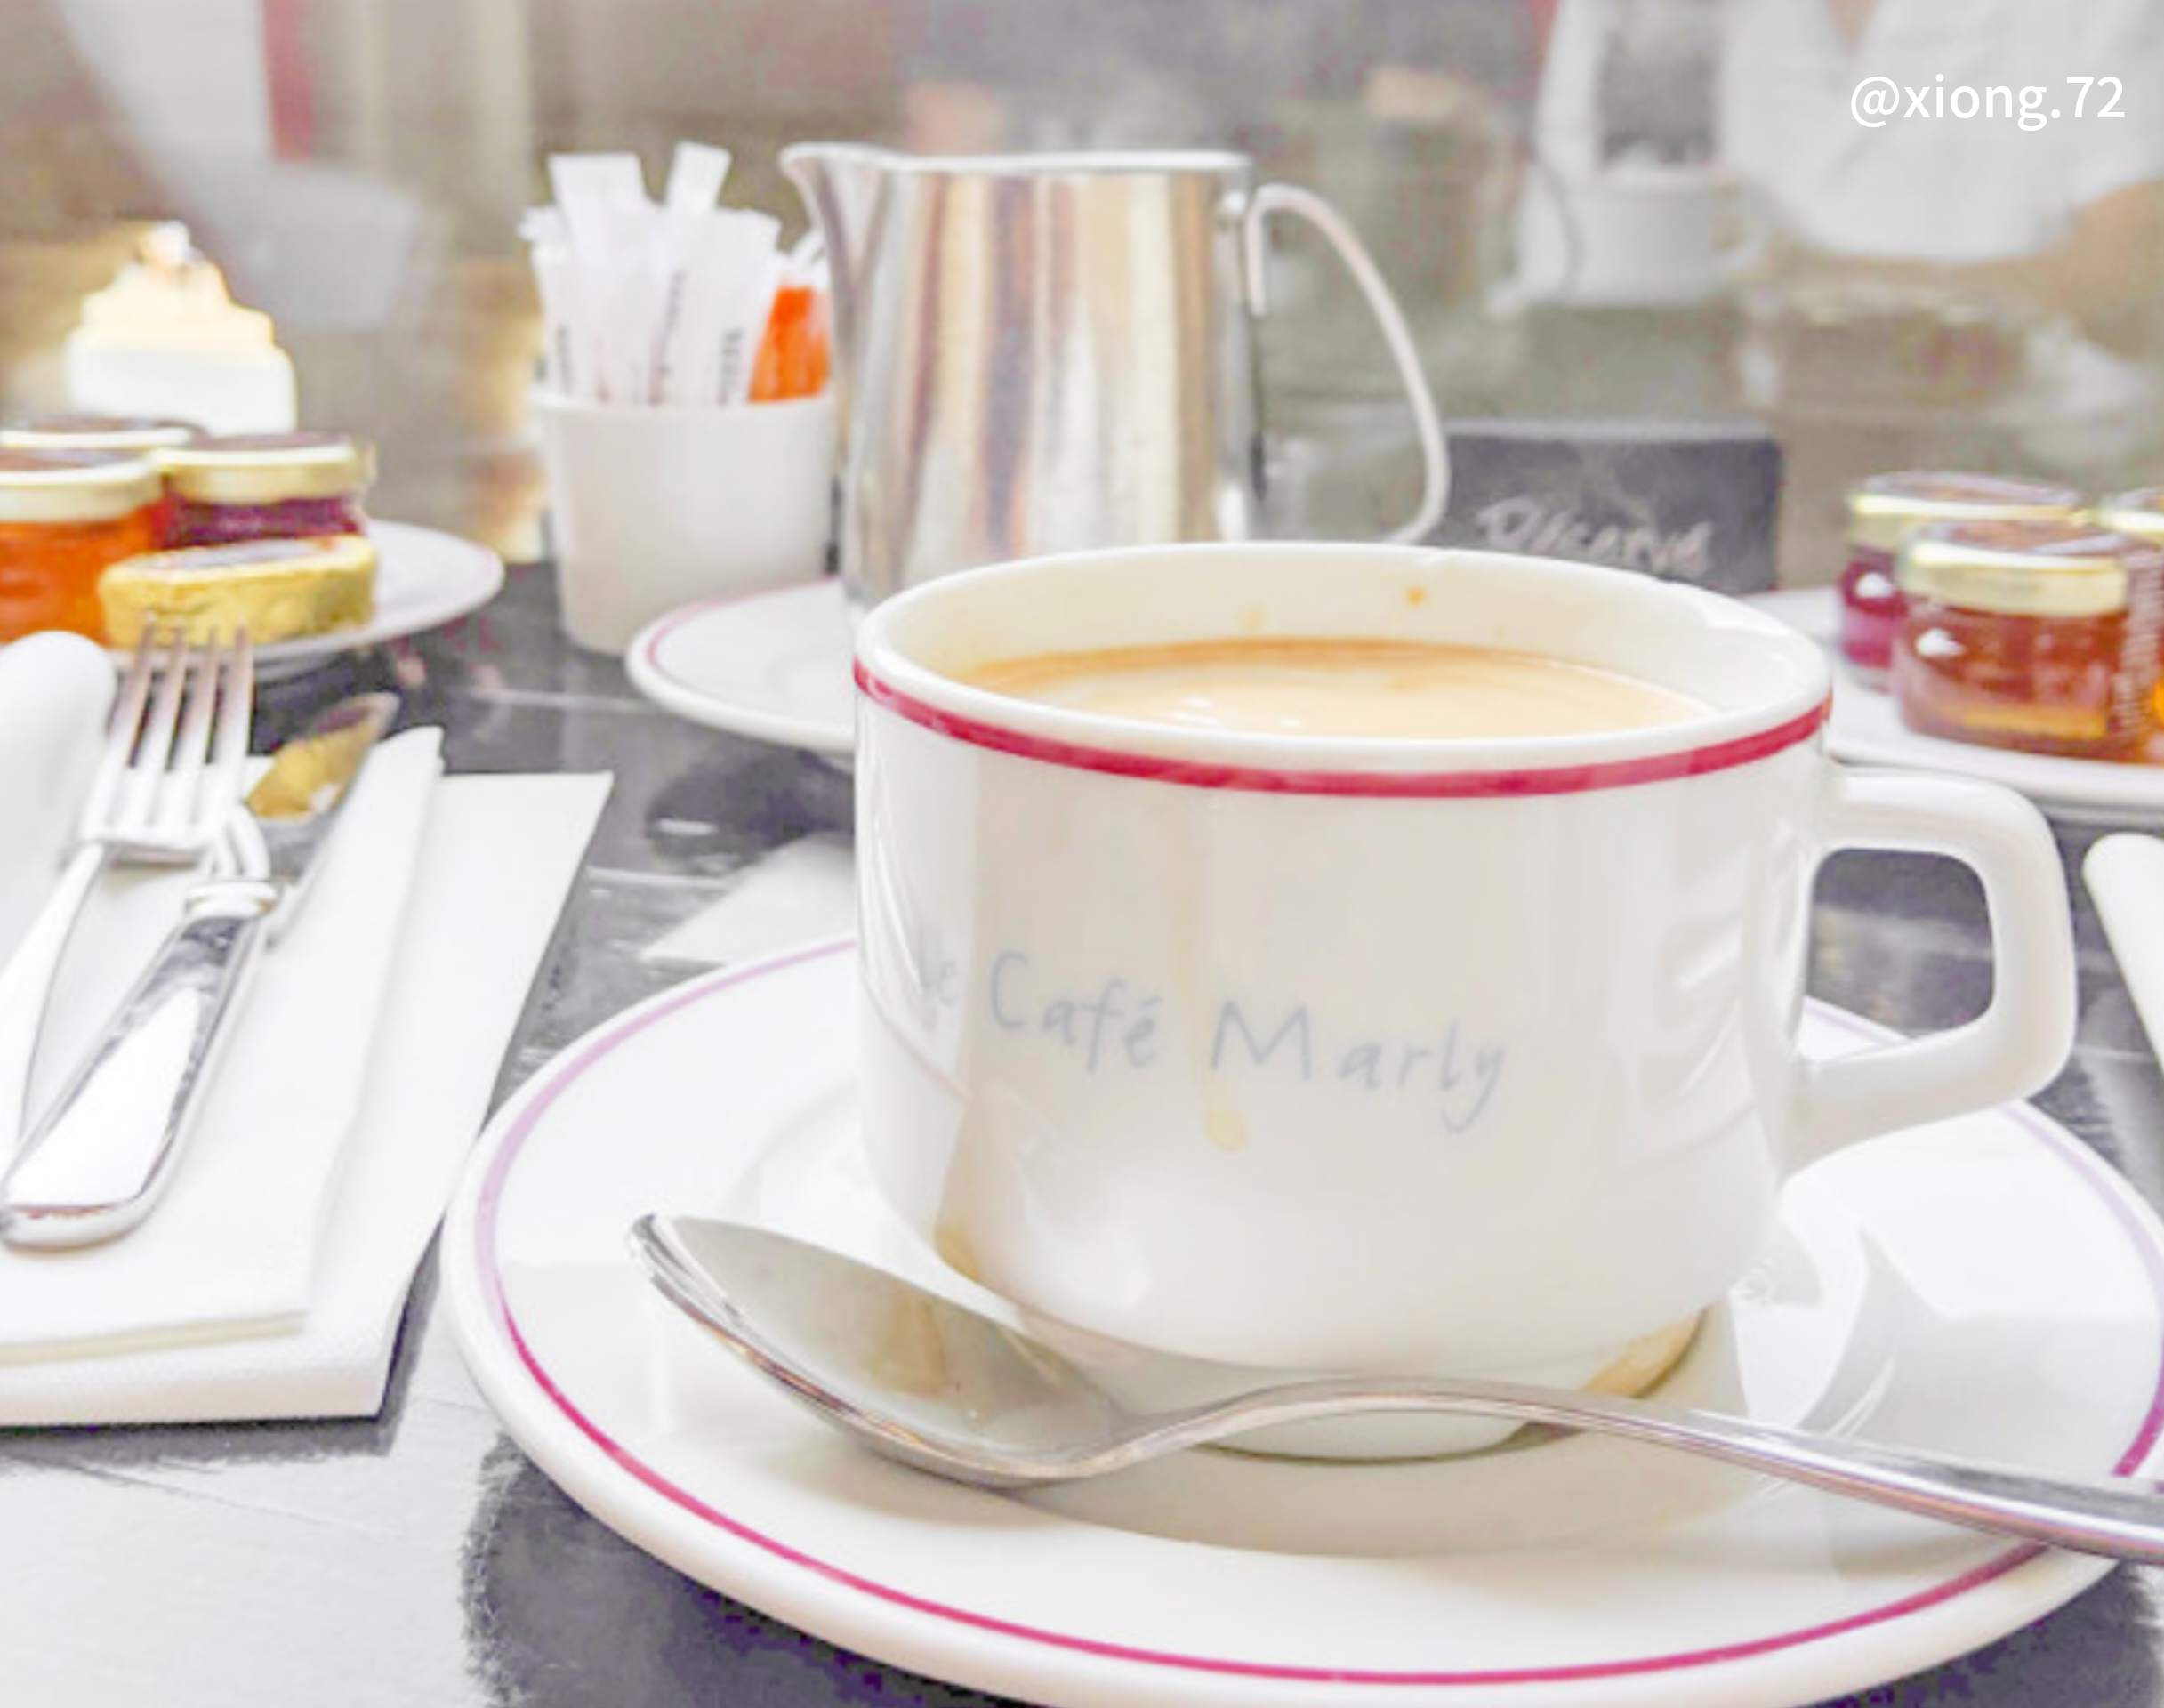 ルーブルで朝食を Le Café Marly